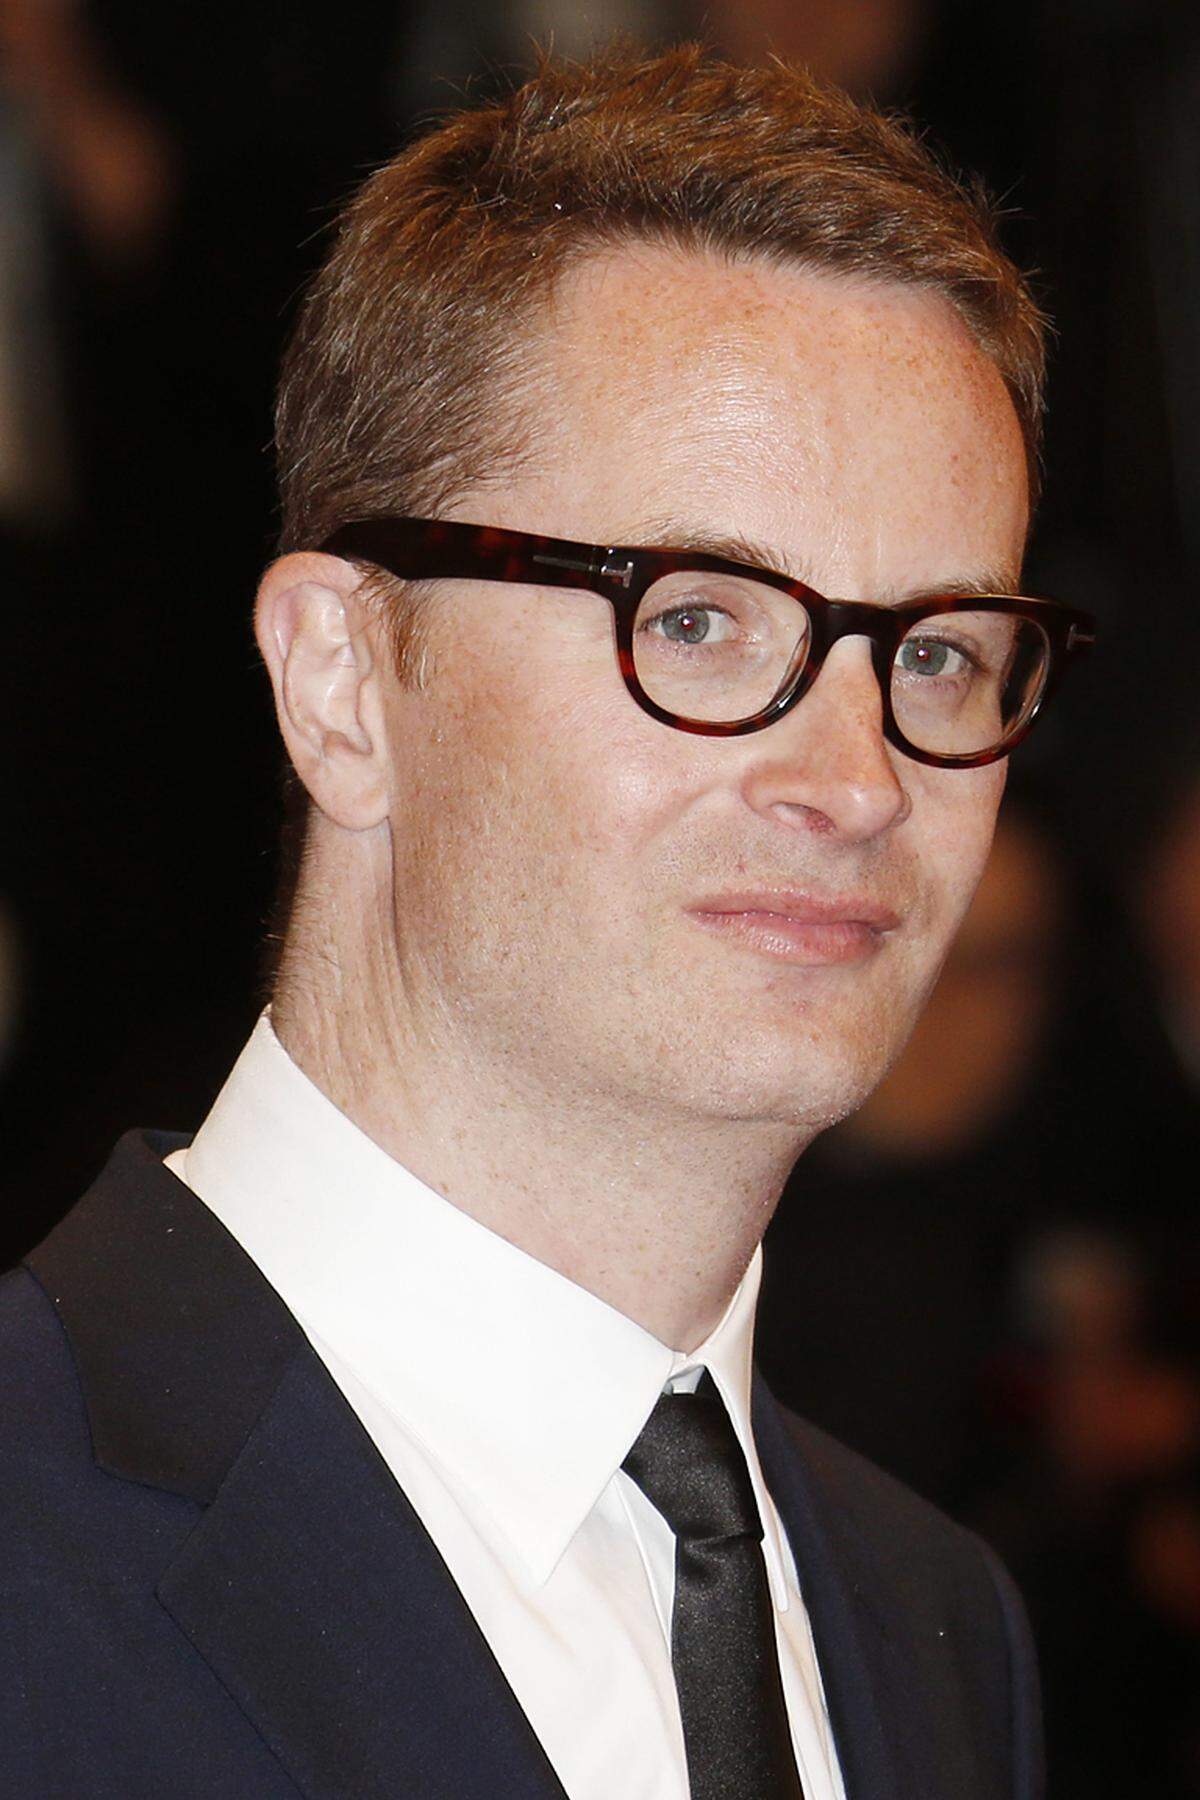 Der dänische Filmemacher präsentierte in Cannes seinen neuen Film "Only God Forgives". Beau und Hauptdarsteller Ryan Gosling, bereits in "Drive" Refns Protagonist, ließ das Filmfestival hingegen aus.